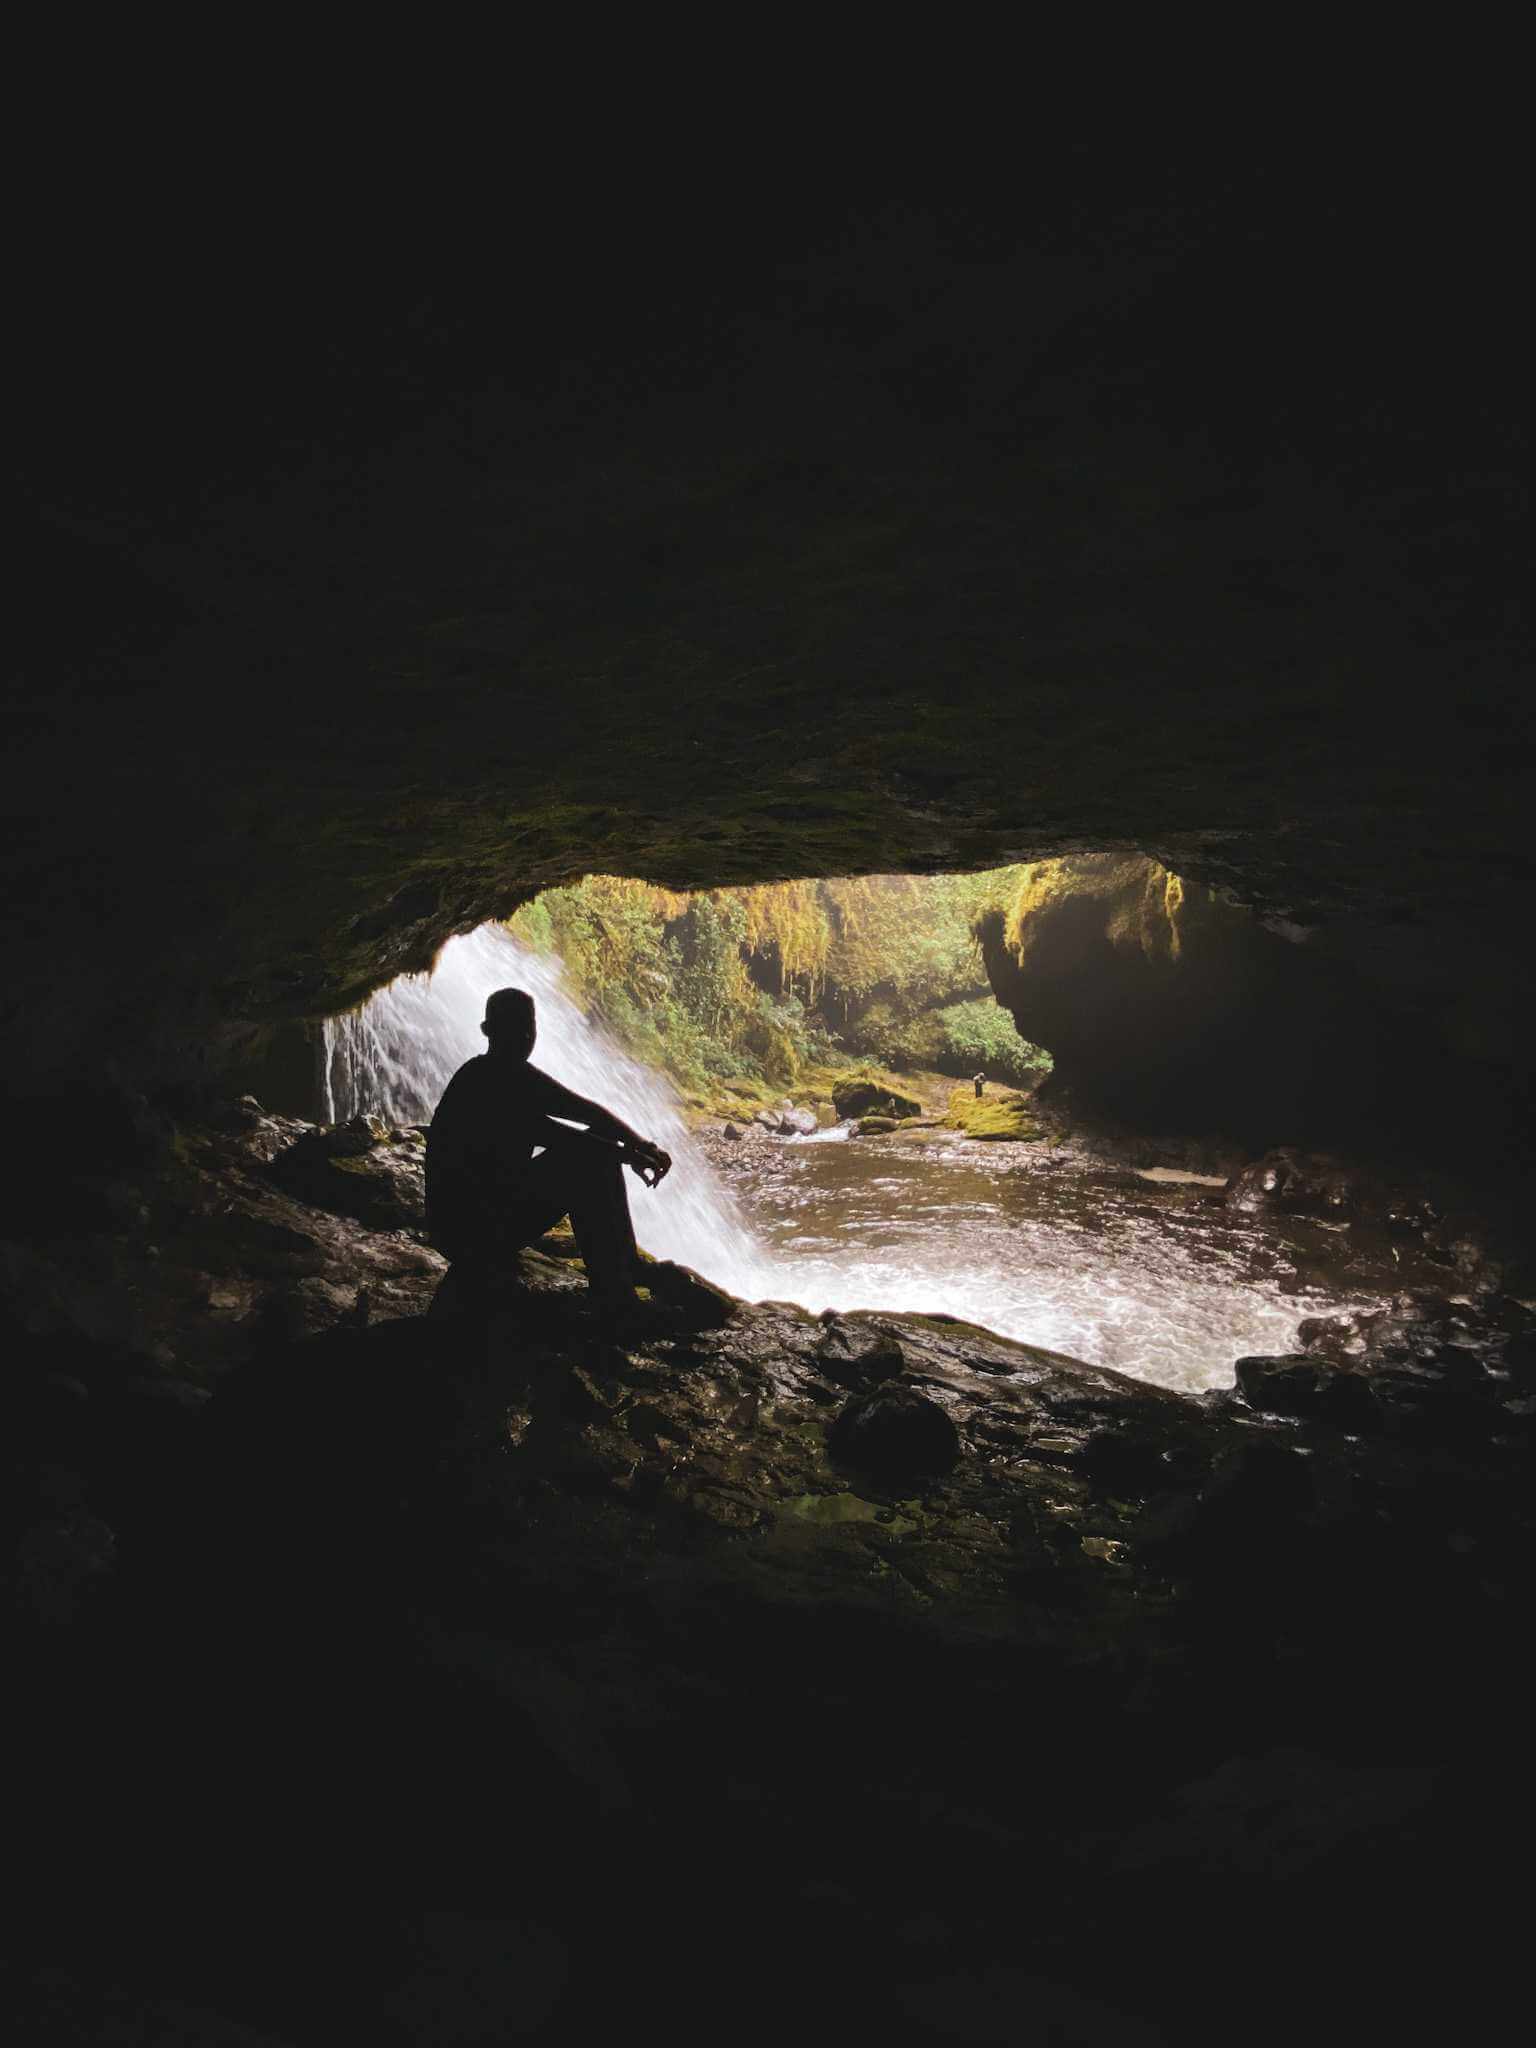 Cueva de los Guácharos